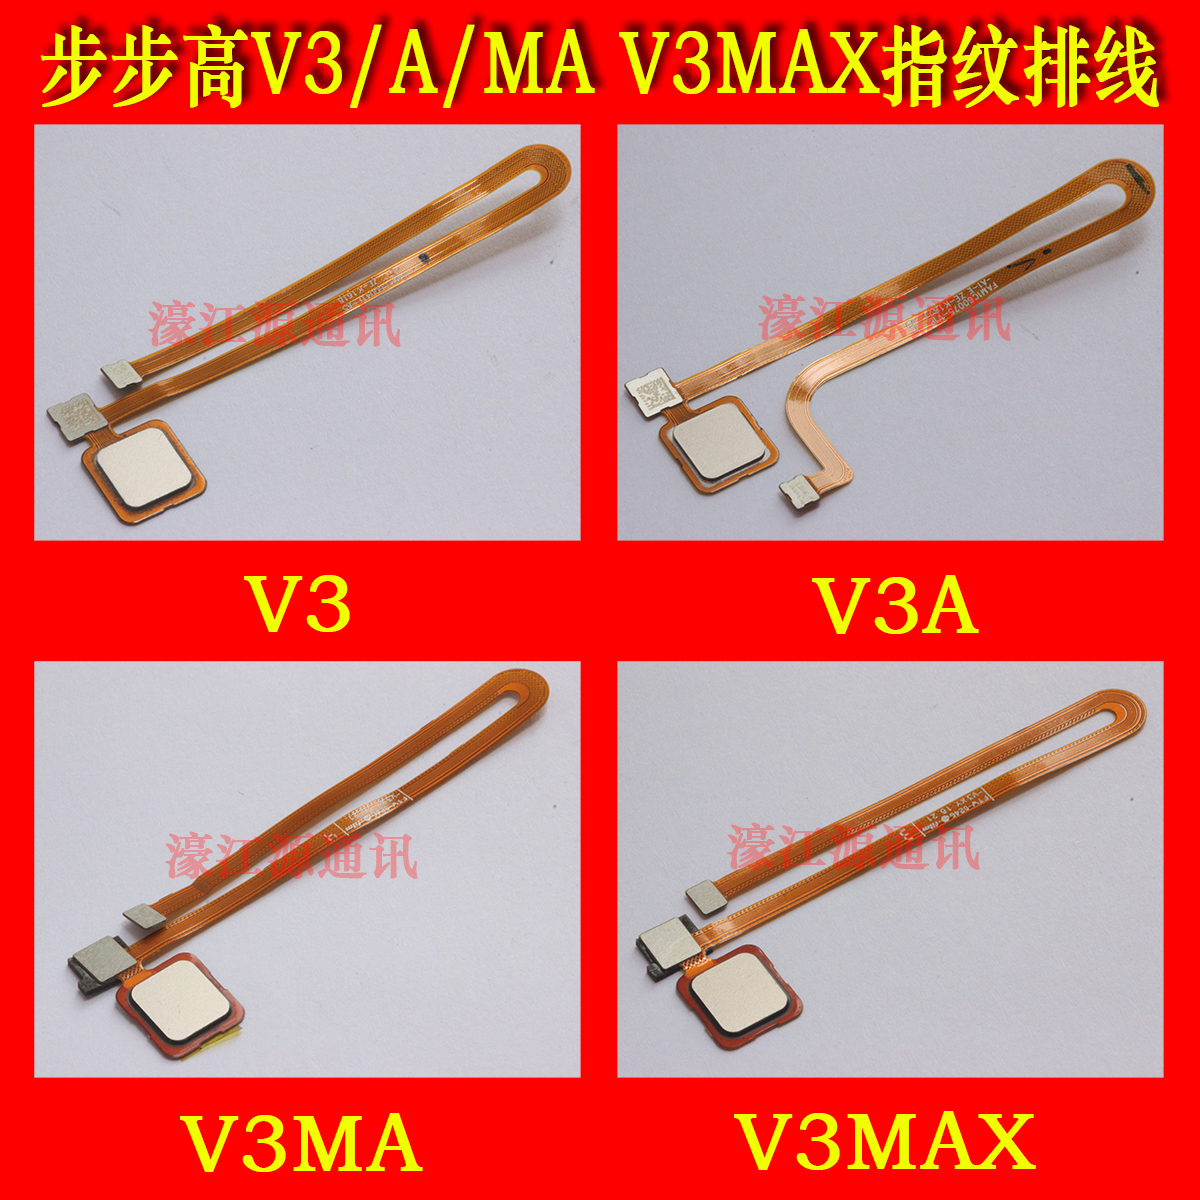 步步高V3 V3MAX/A指纹解锁排线 VIVO V3A/MA返回感应识别HOME按键